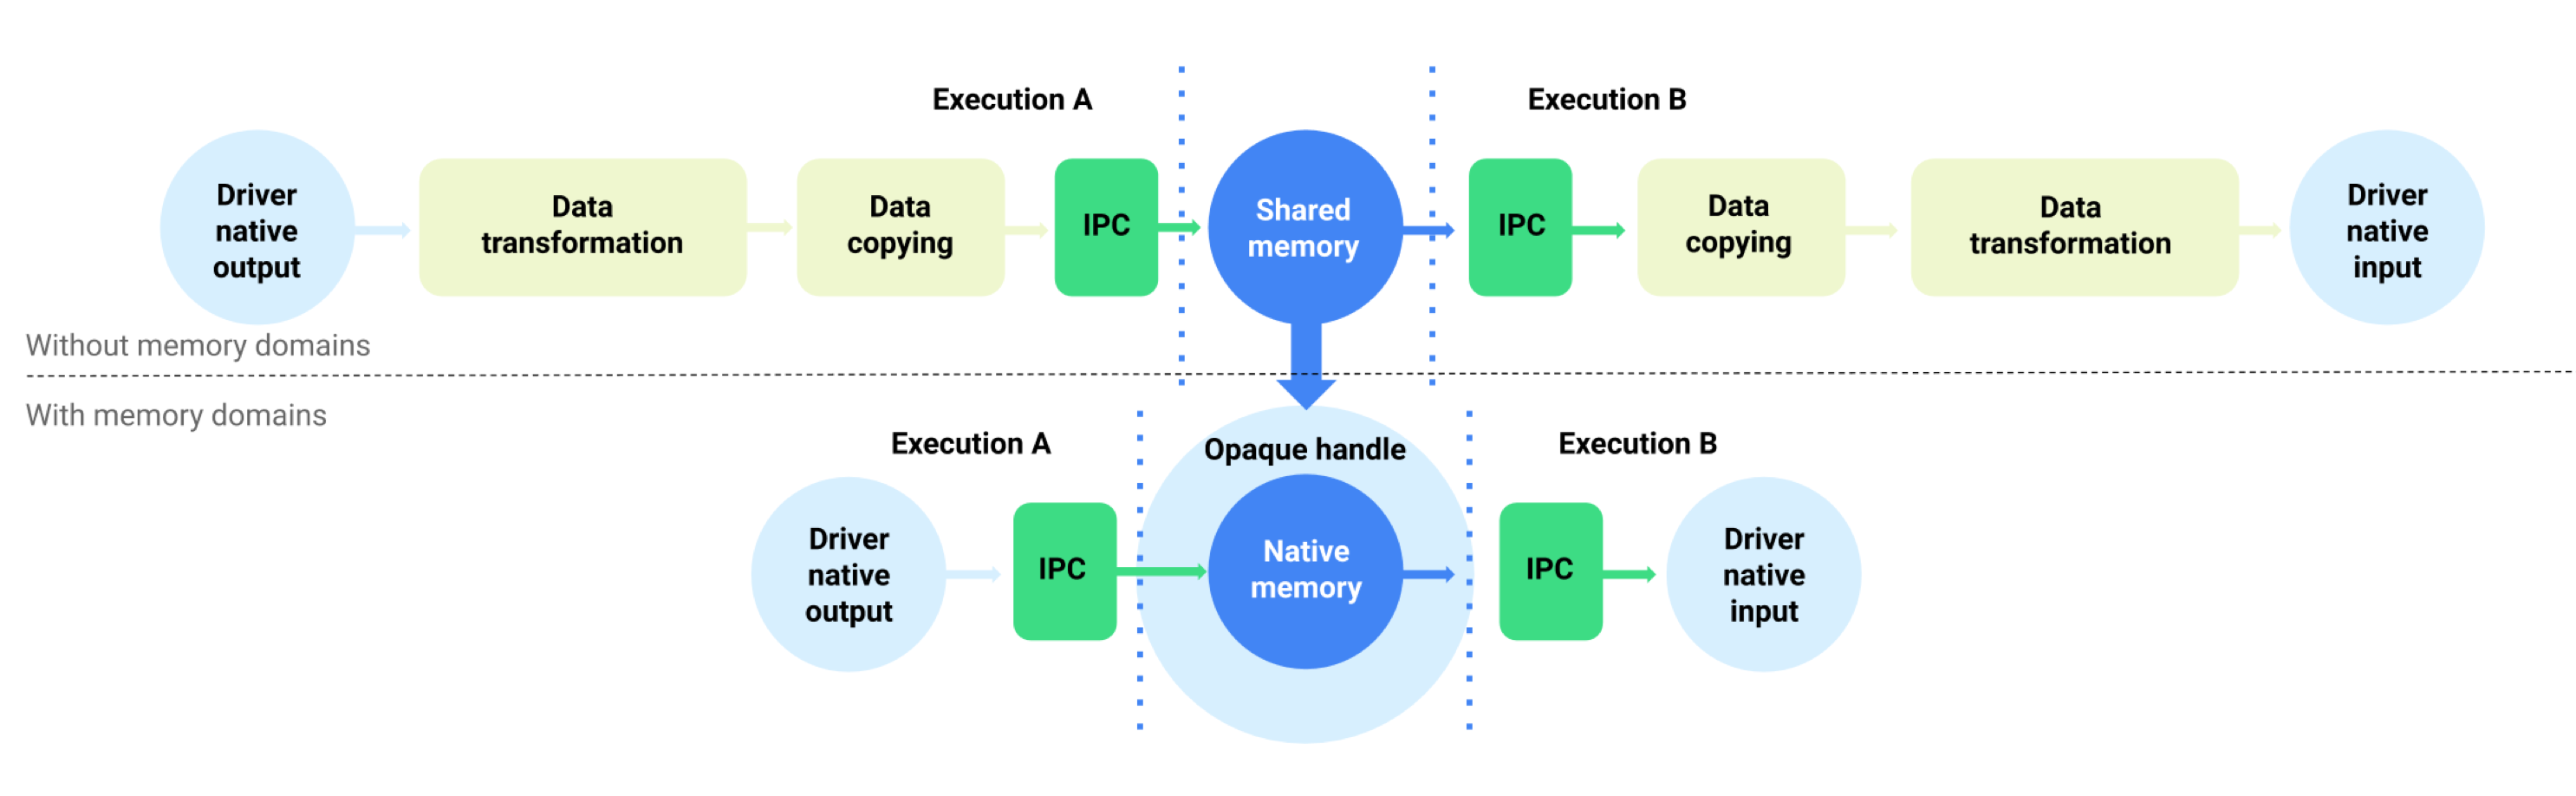 Буферный поток данных с доменами памяти и без них